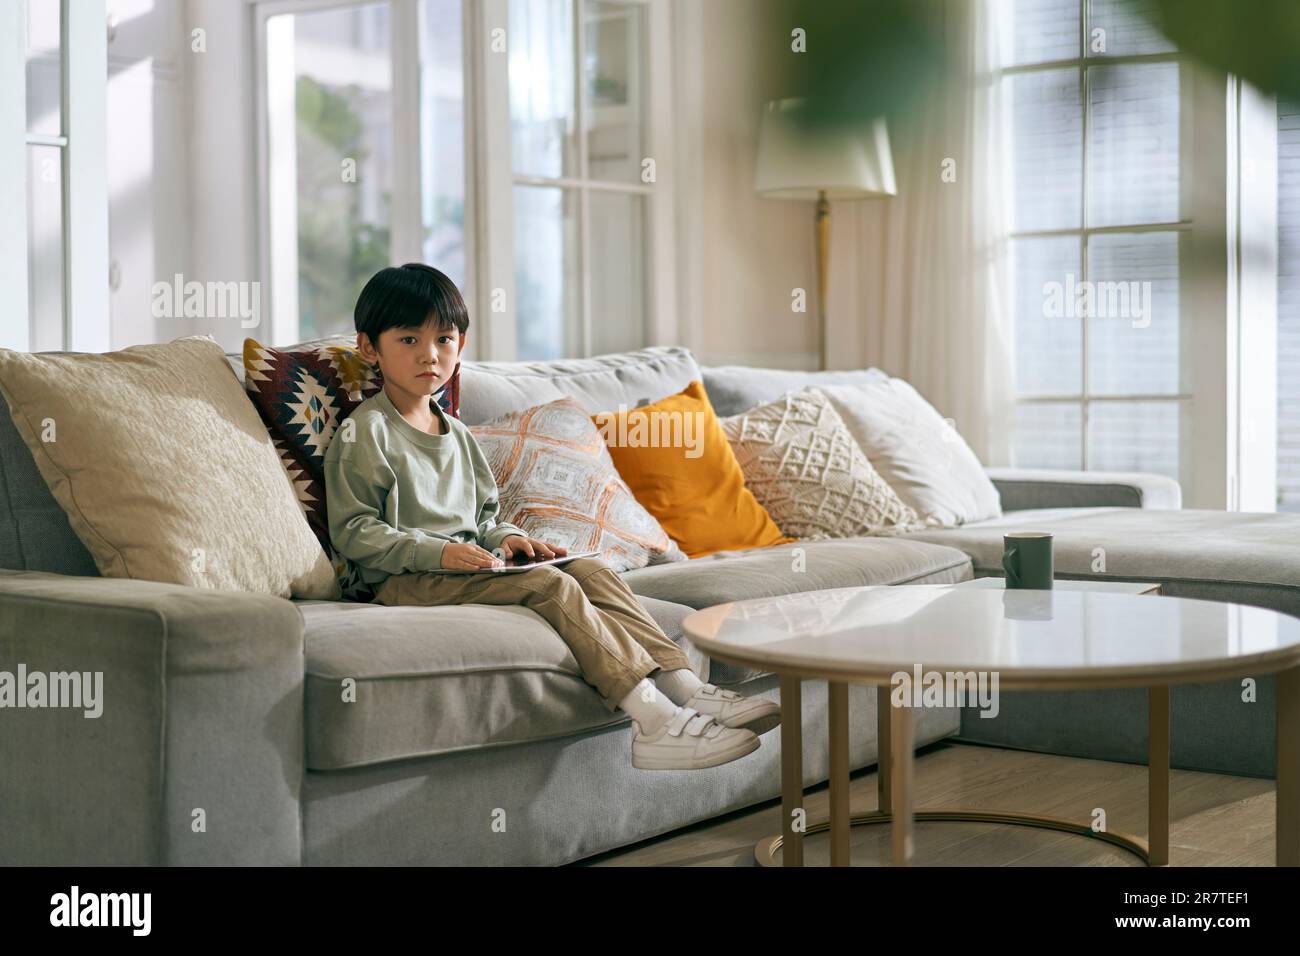 Ein kleiner asiatischer Junge, der zu Hause auf der Couch der Familie saß und traurig aussah Stockfoto